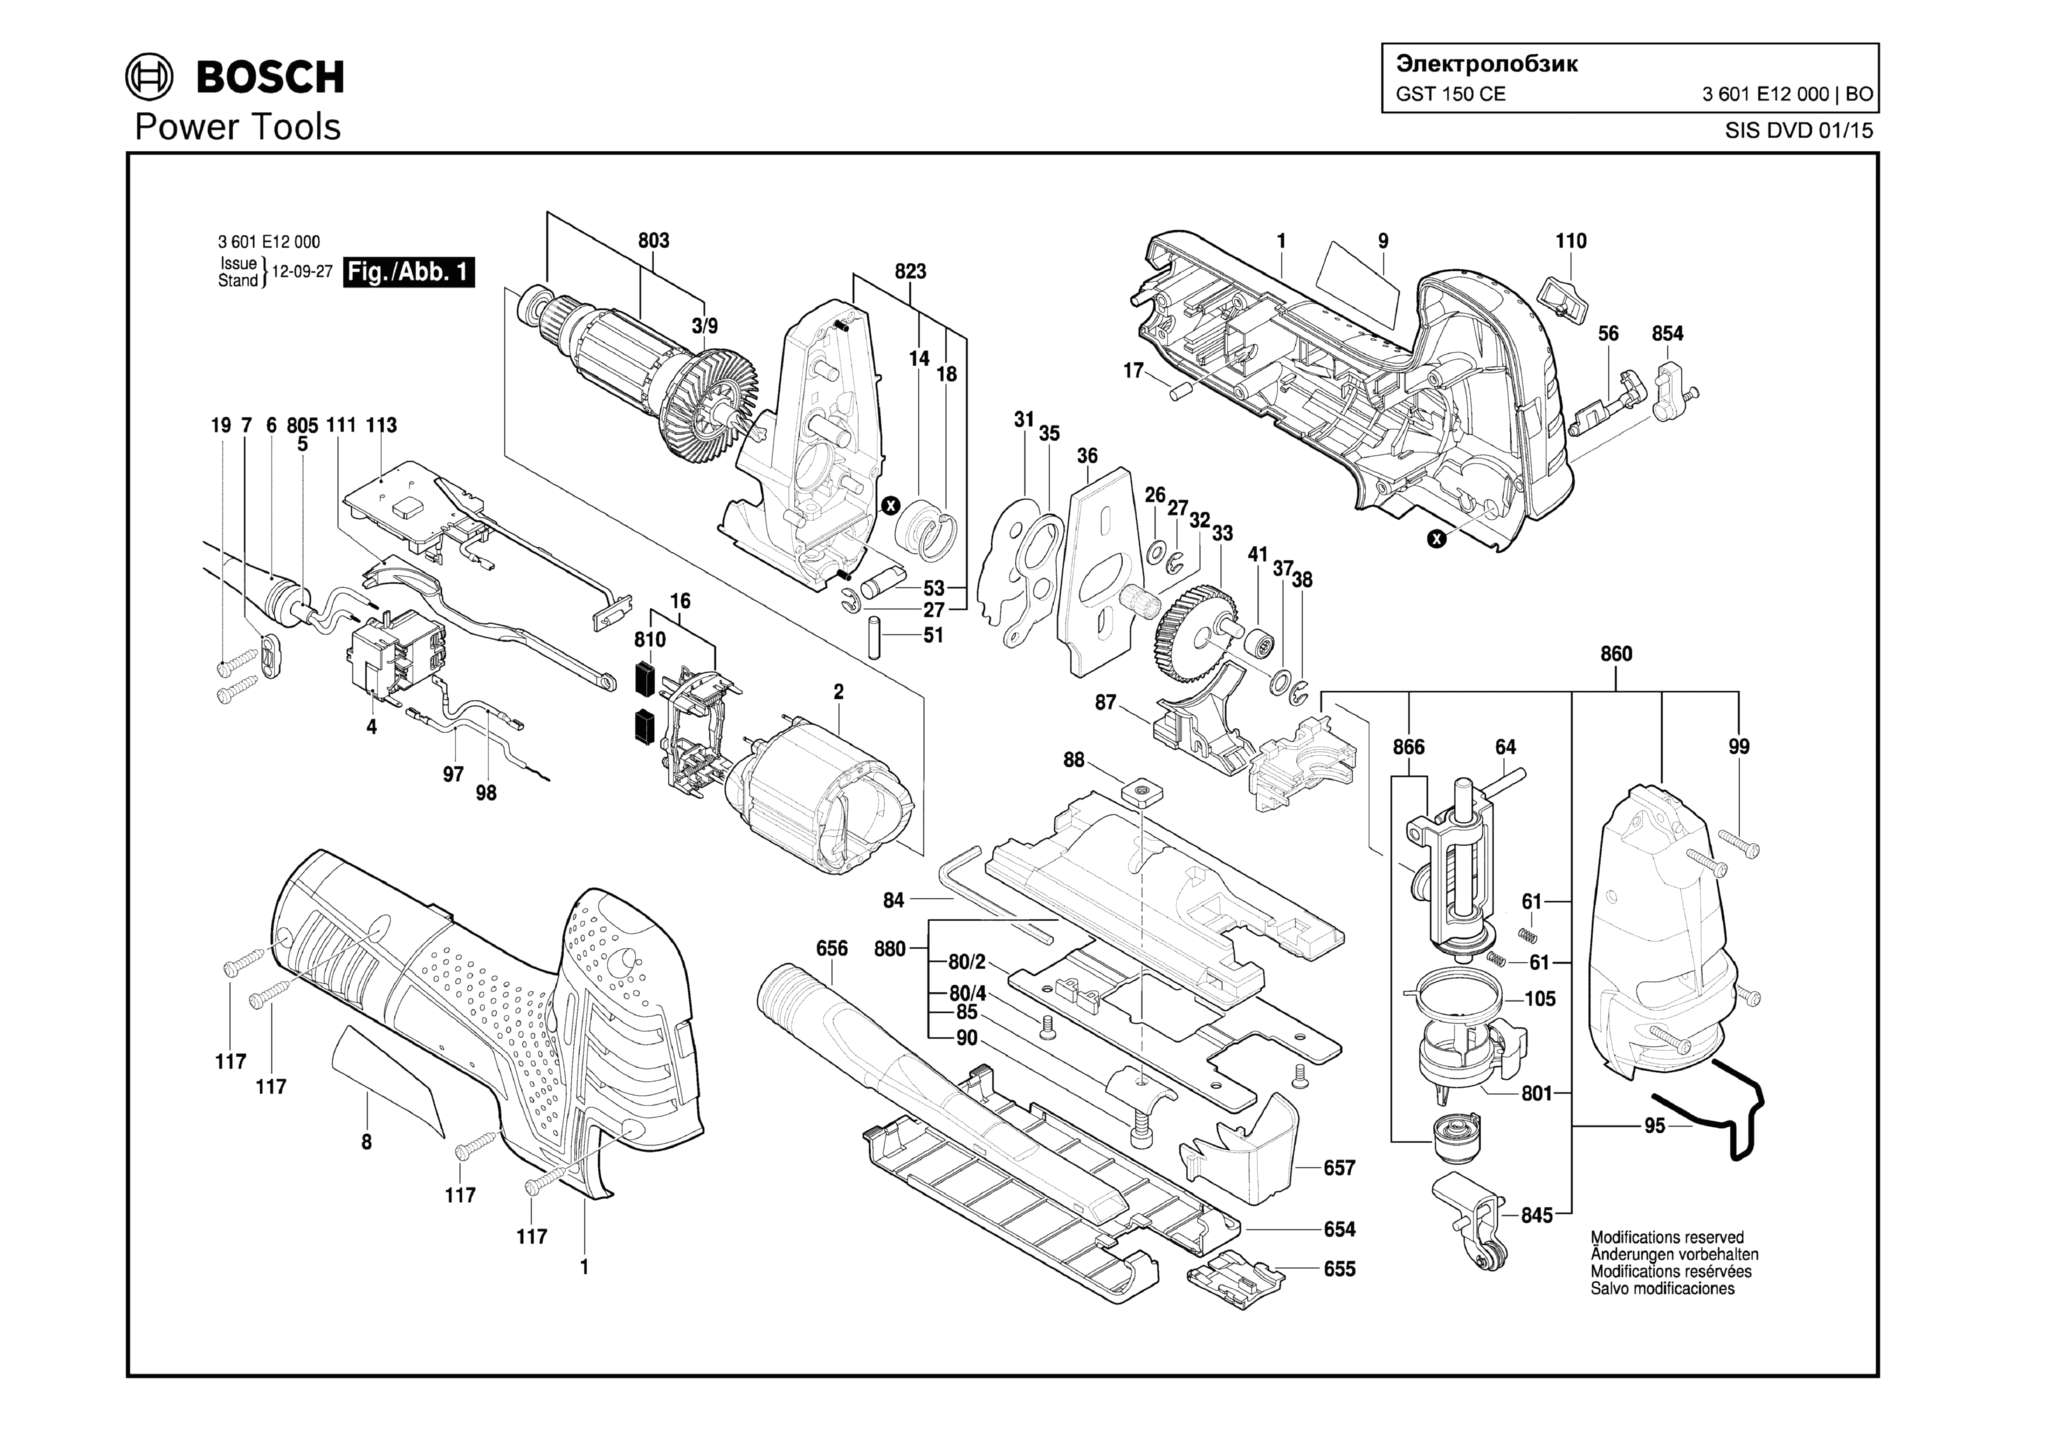 Запчасти, схема и деталировка Bosch GST 150 CE (ТИП 3601E12000)